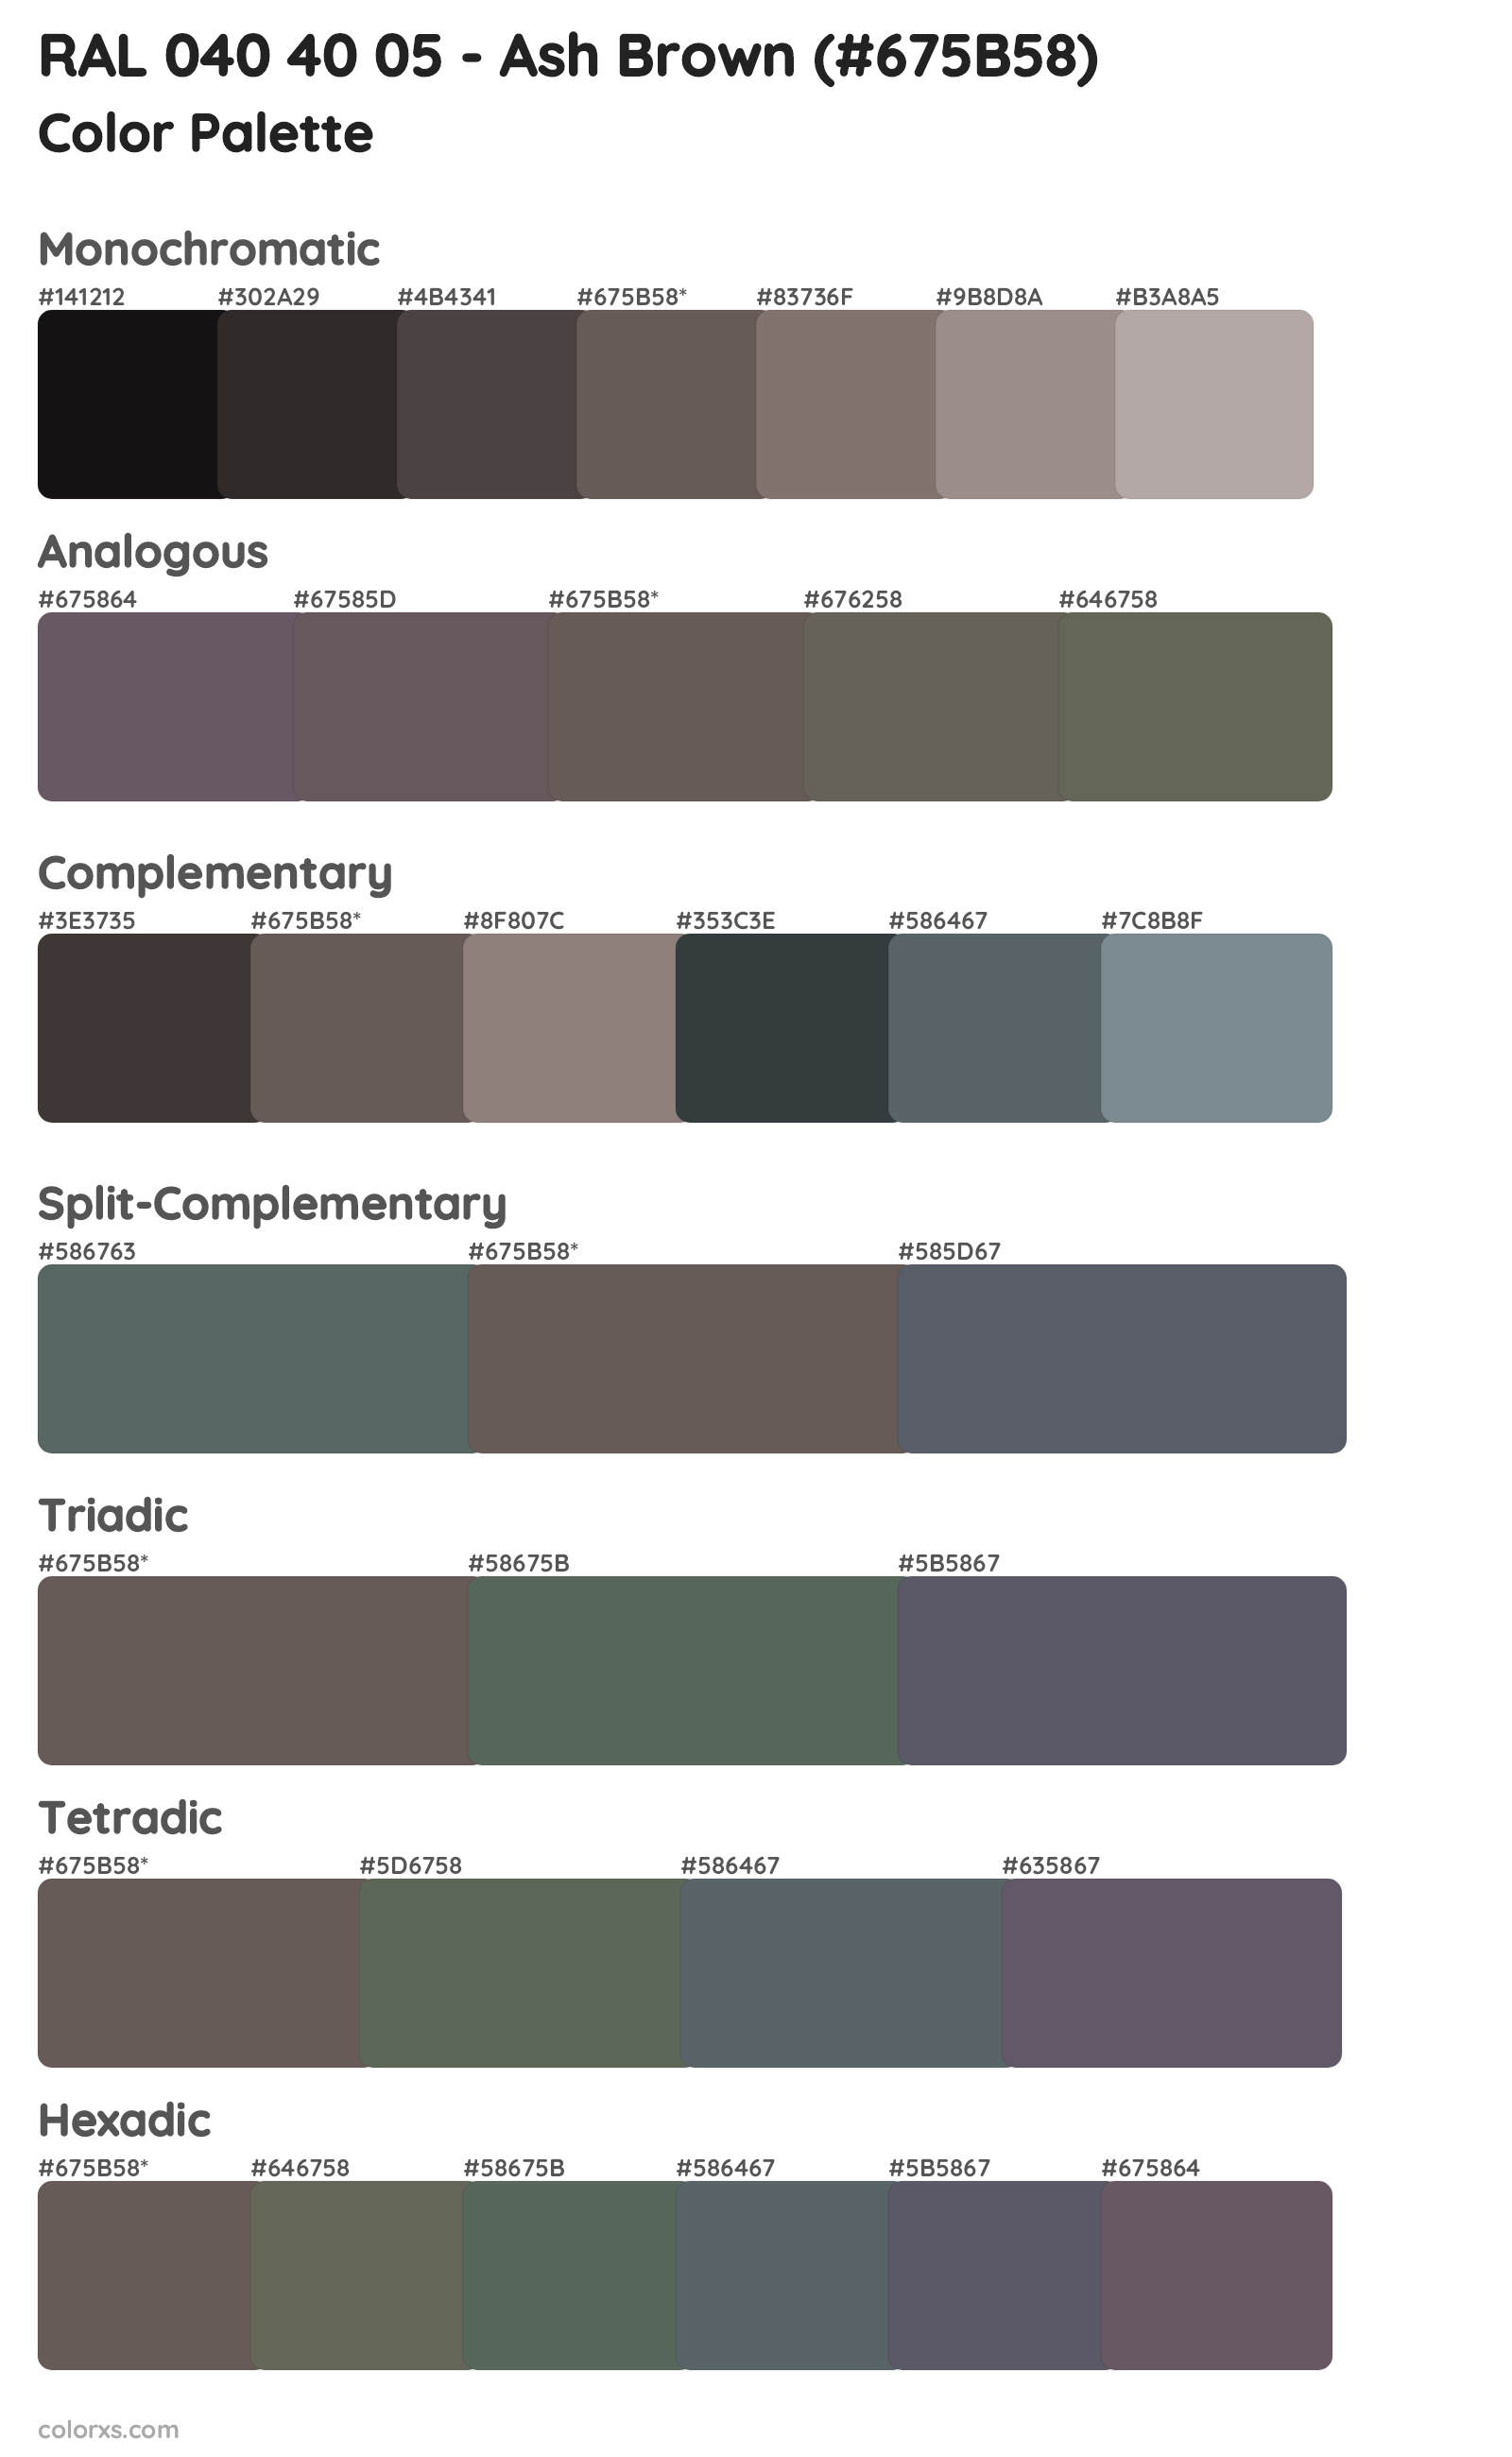 RAL 040 40 05 - Ash Brown Color Scheme Palettes